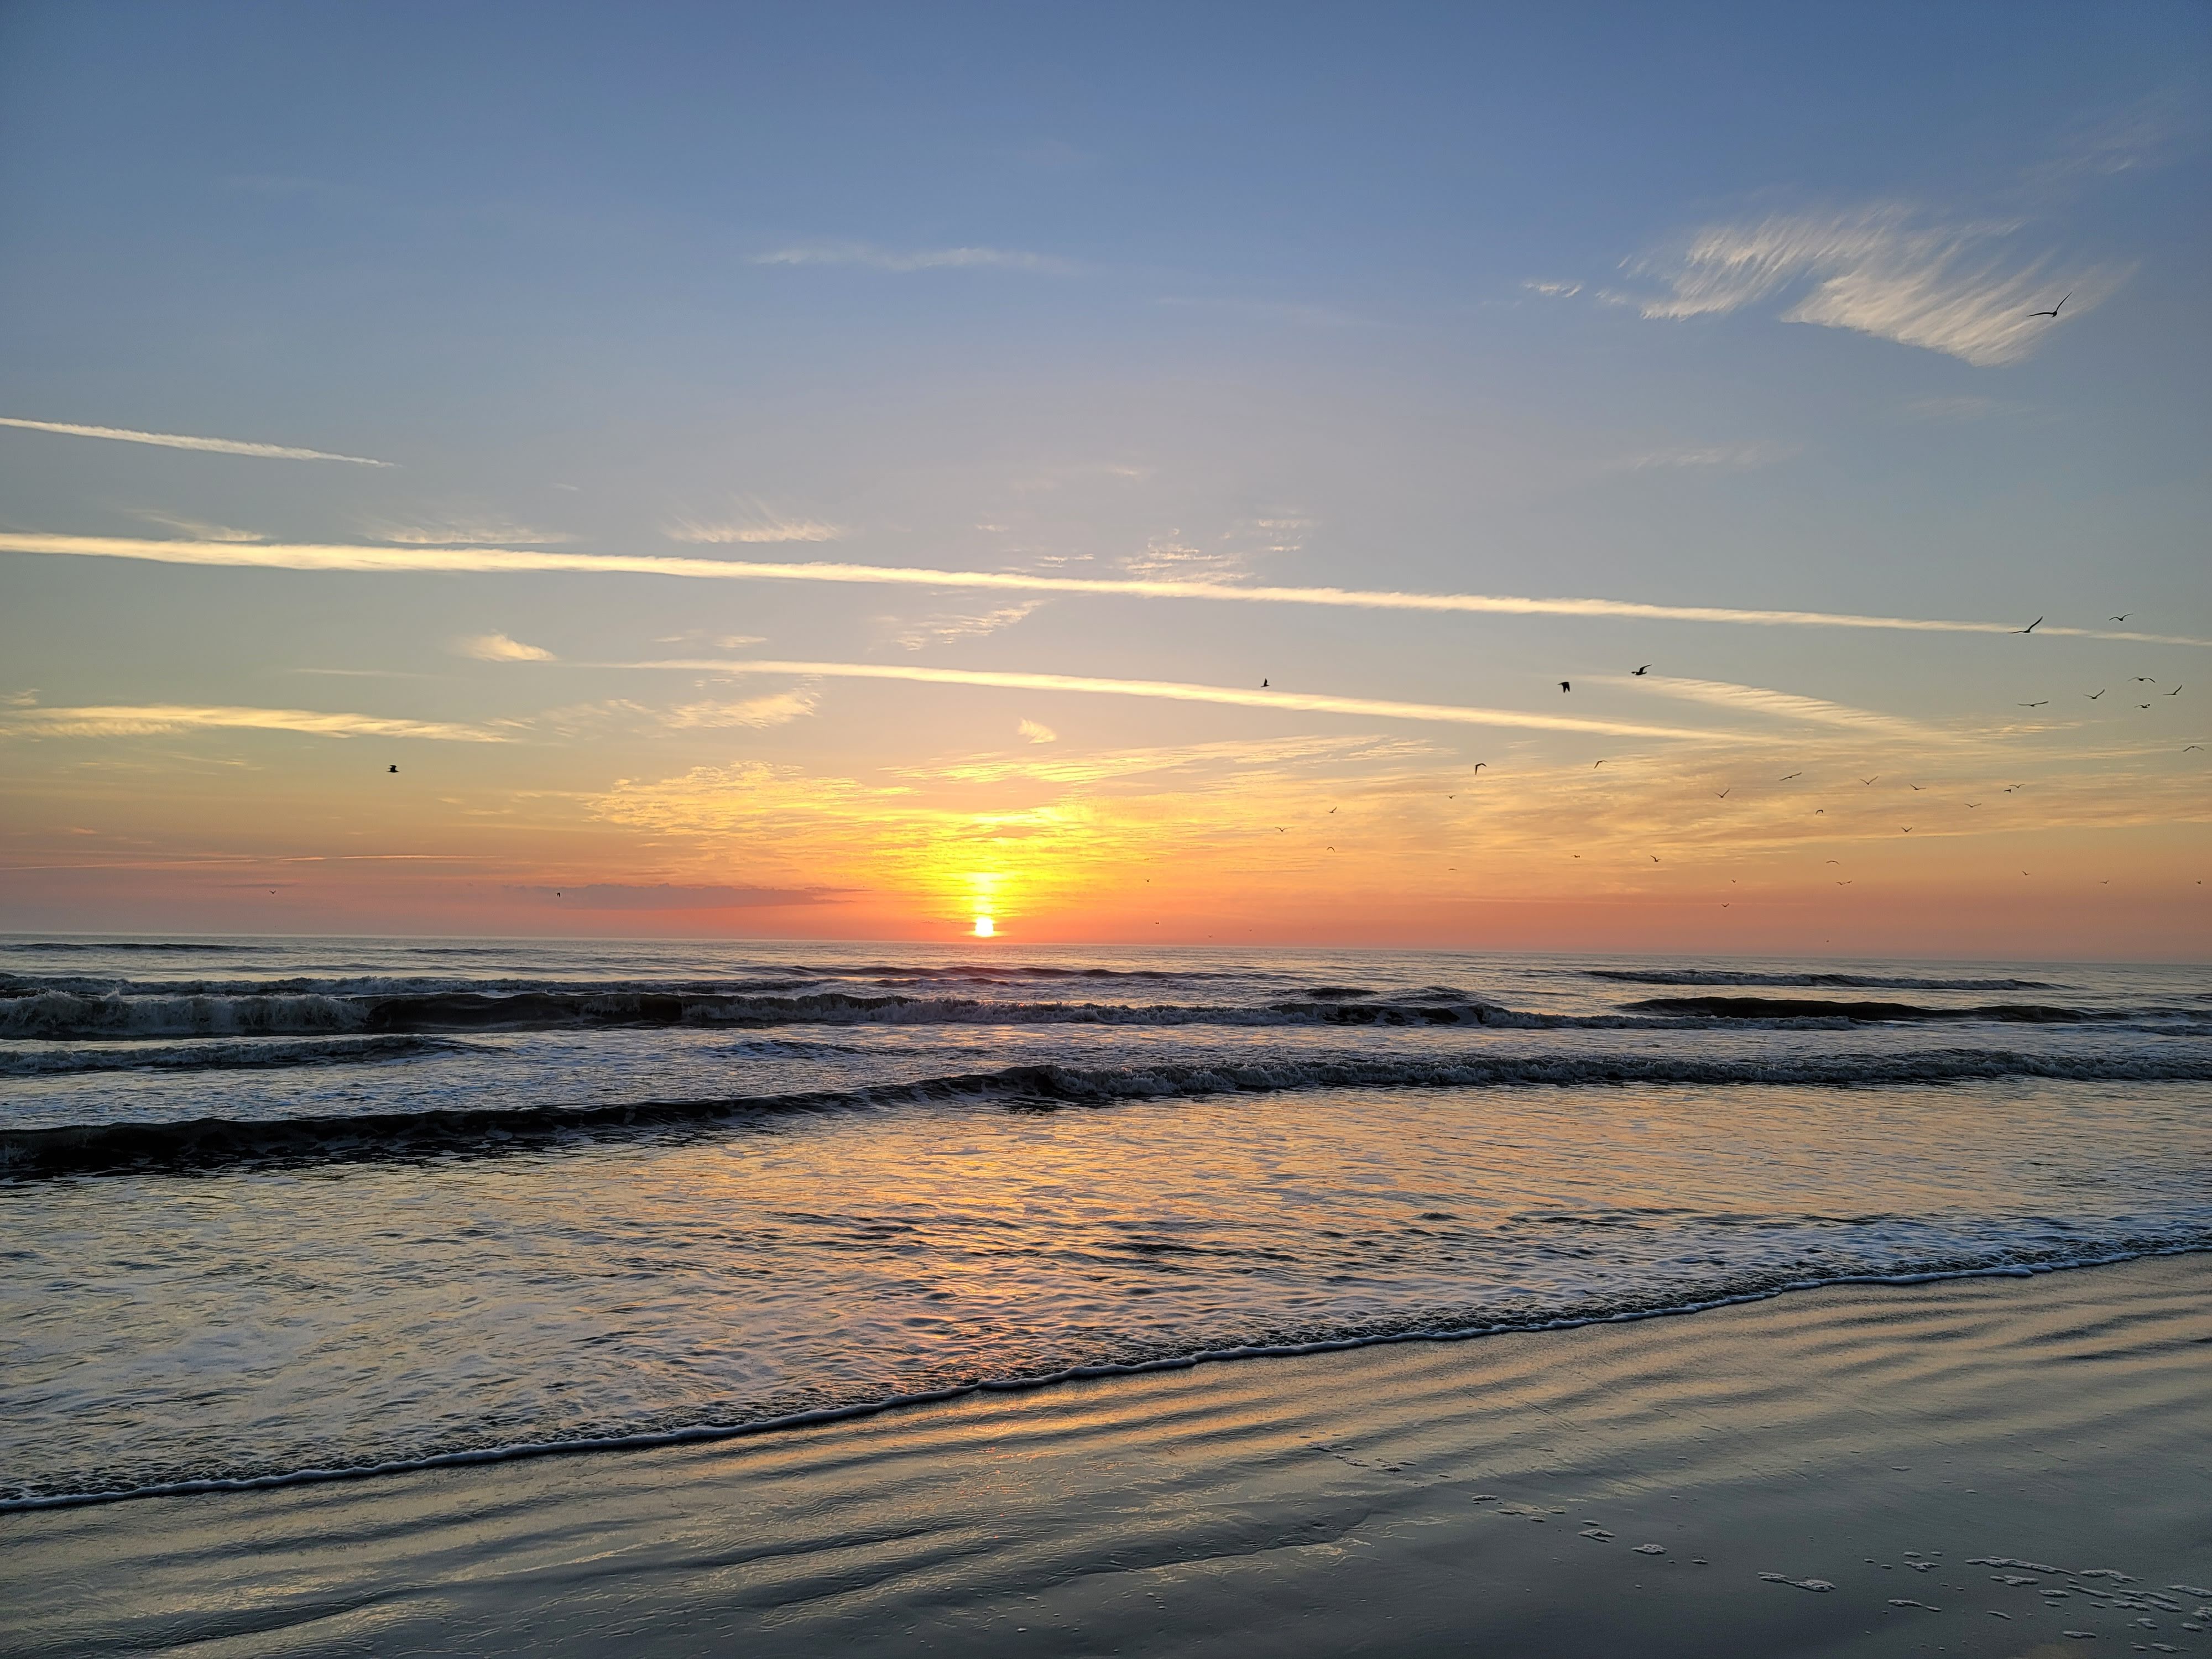 Beach sunrise at Daytona